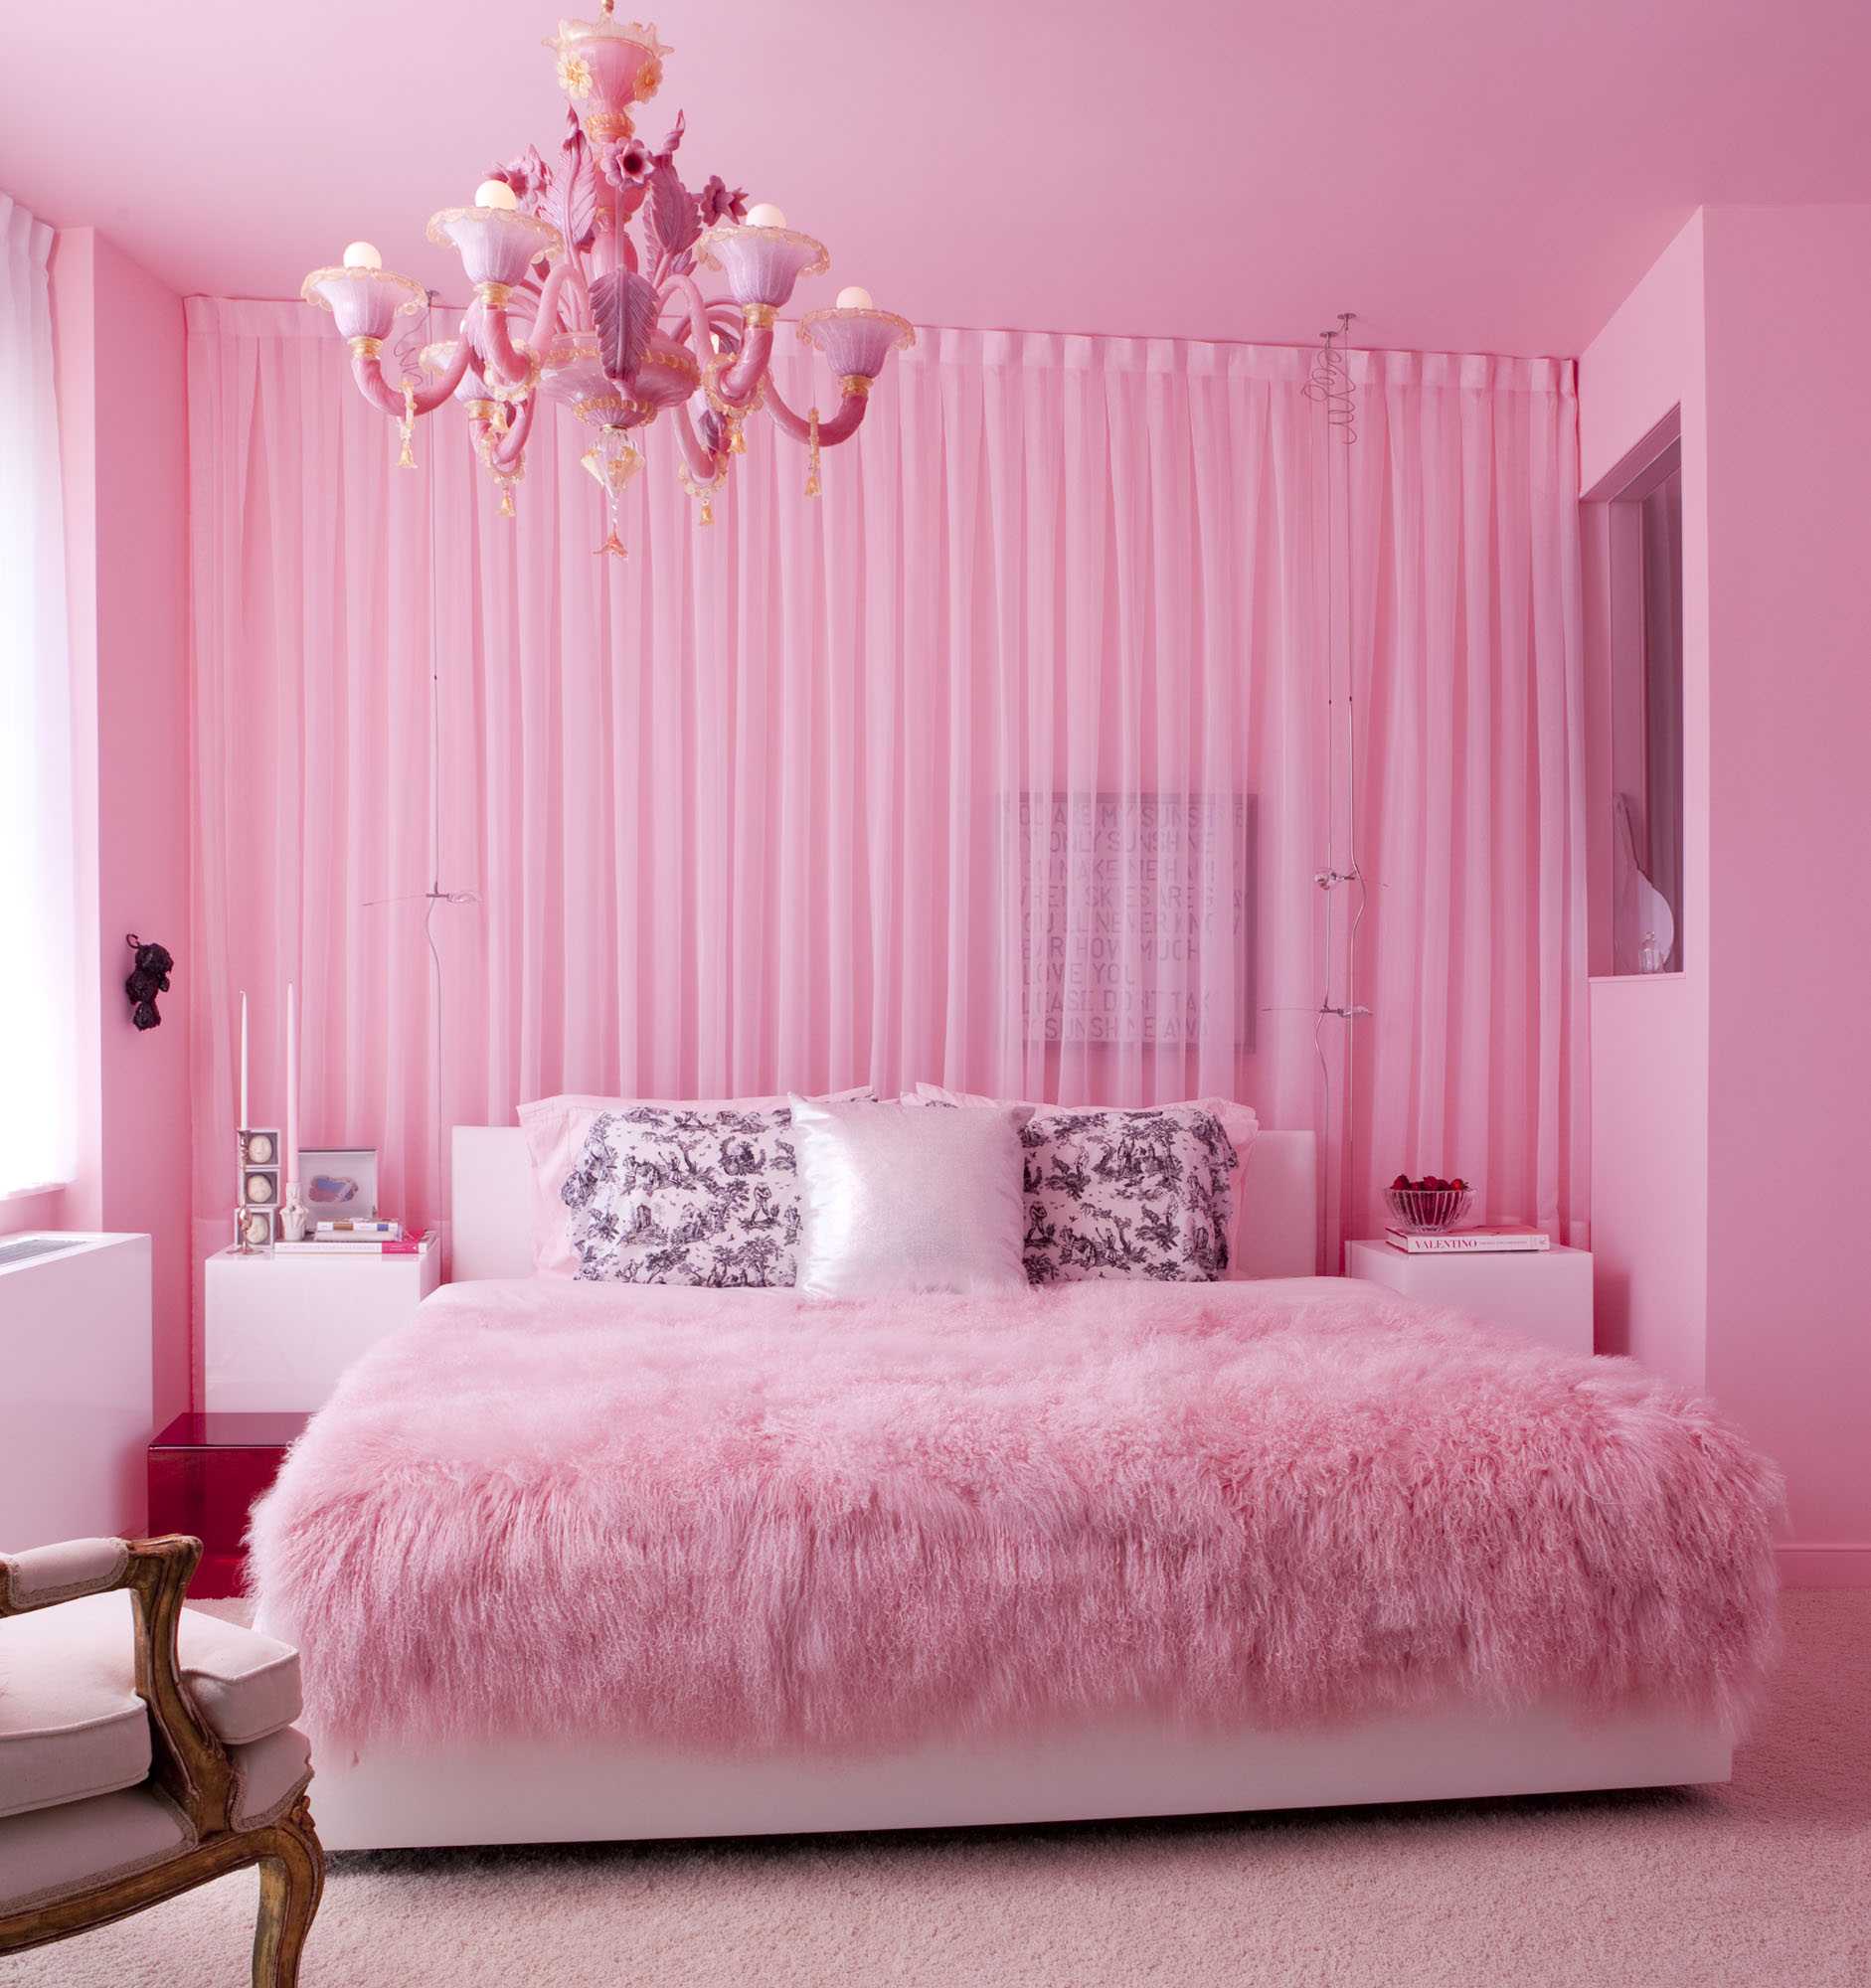 élénk rózsaszín kombinációja a lakás dekorációjában más színekkel